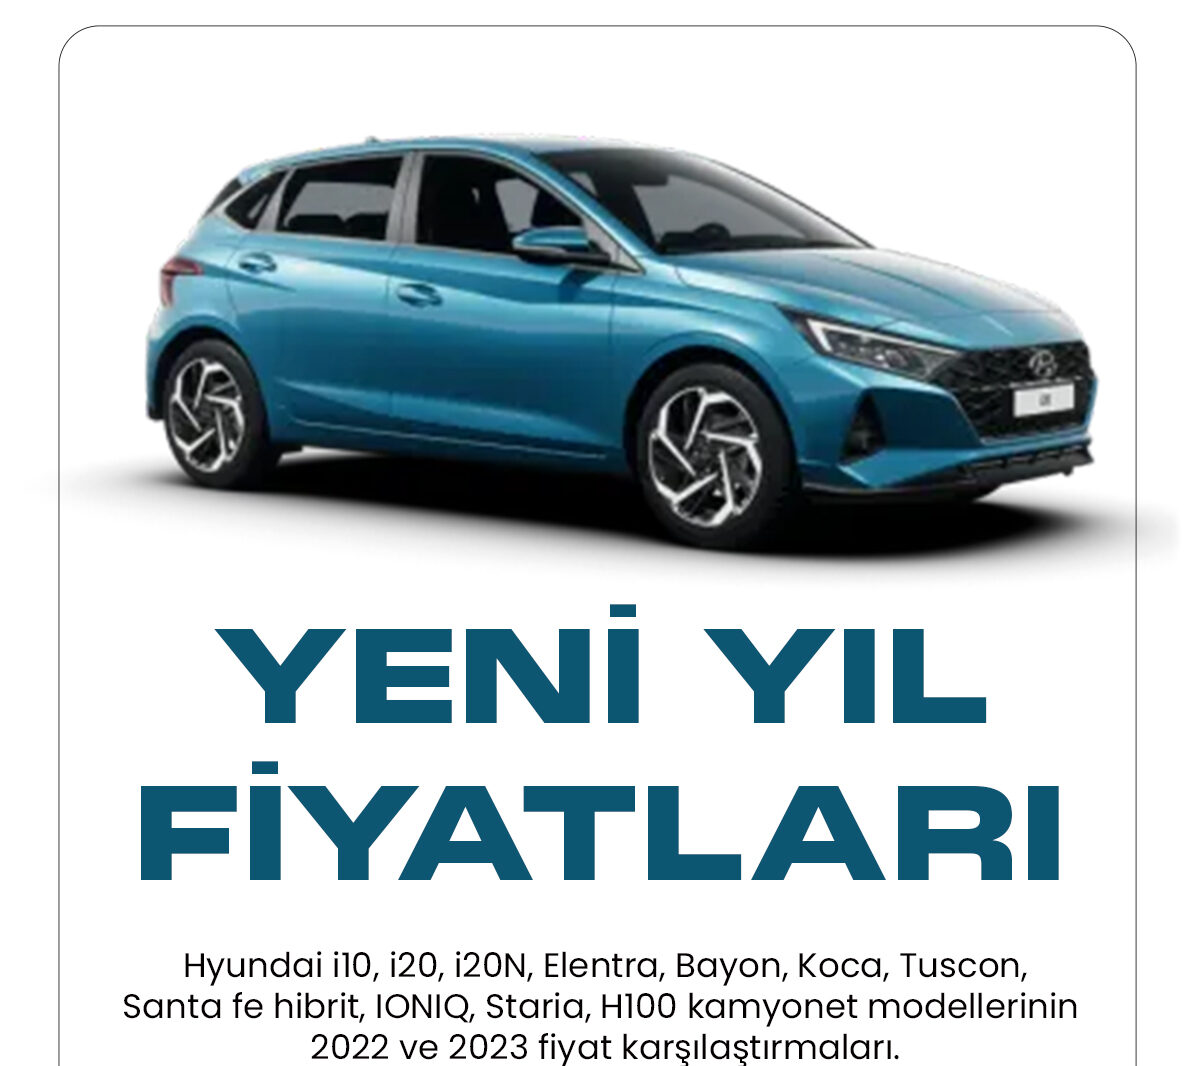 Hyundai Ocak fiyat listesi yayımlandı. Türkiye'de en uygun fiyatlı araç markası olan Hyundai, 2023 Ocak fiyat listesini paylaştı. Hyundai markalı araç modelleri, ülkemizde hem kadın hem de erkek sürücüler tarafından en sık tercih edilen modeller arasında yer alıyor.